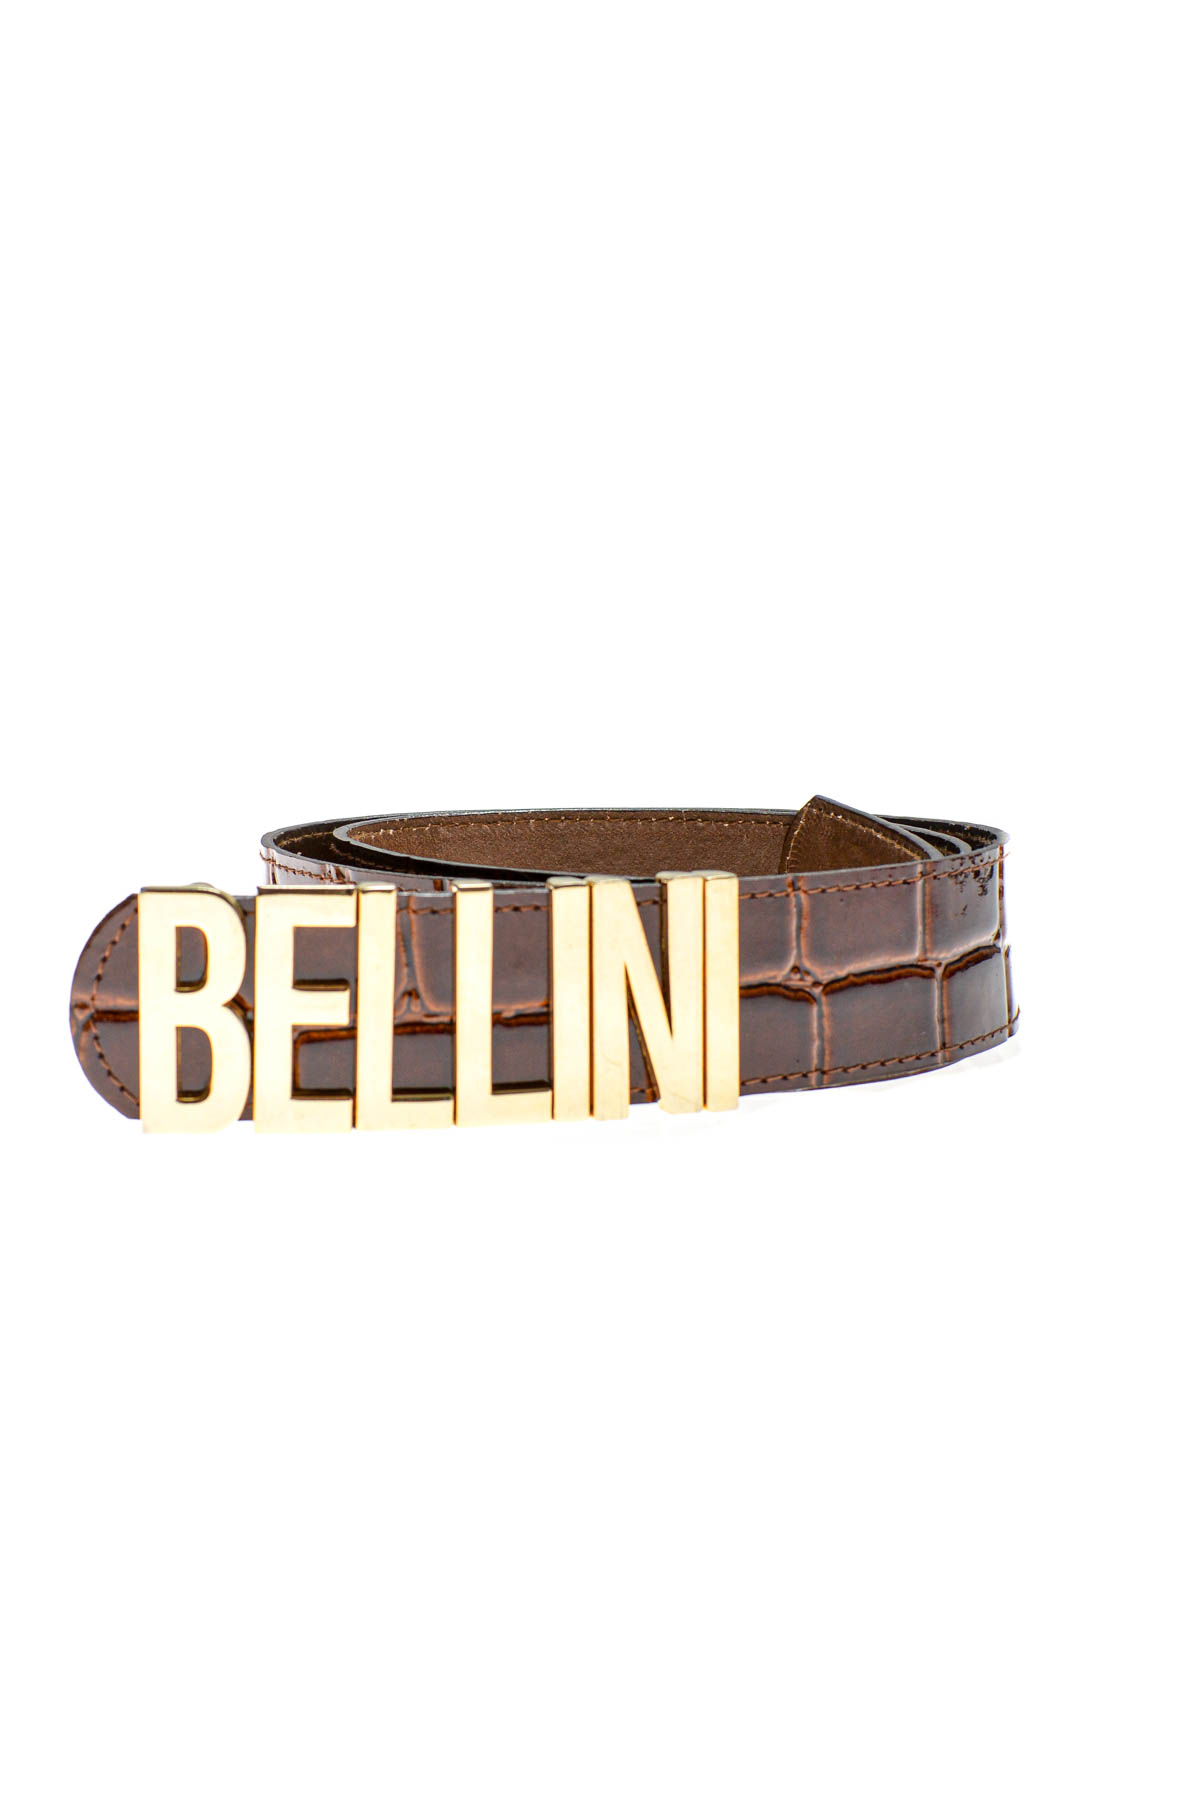 Ladies's belt - Bellini - 0